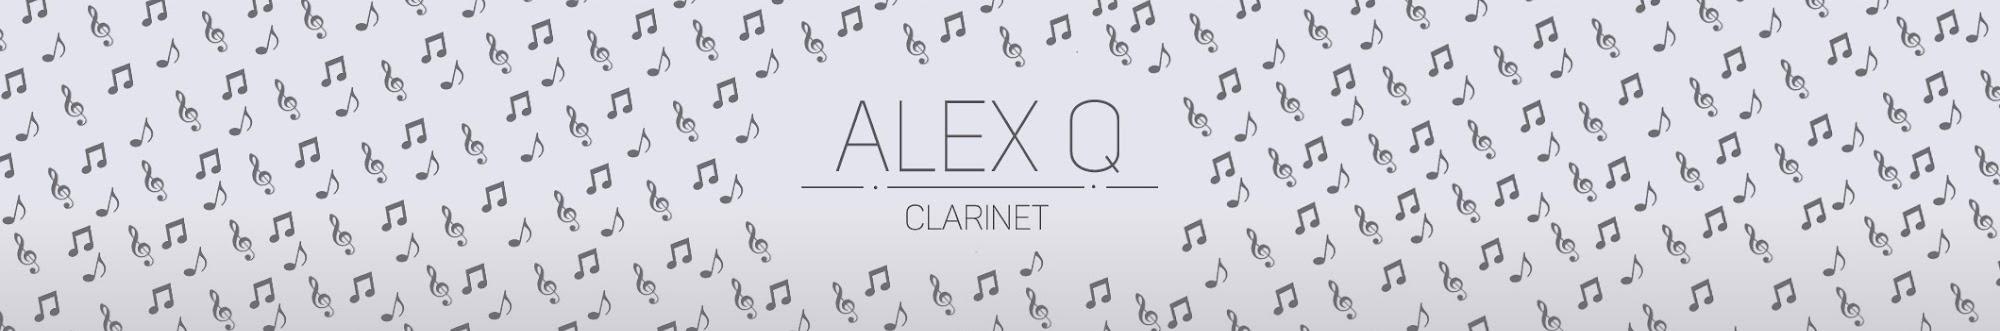 AlexQ - Clarinet